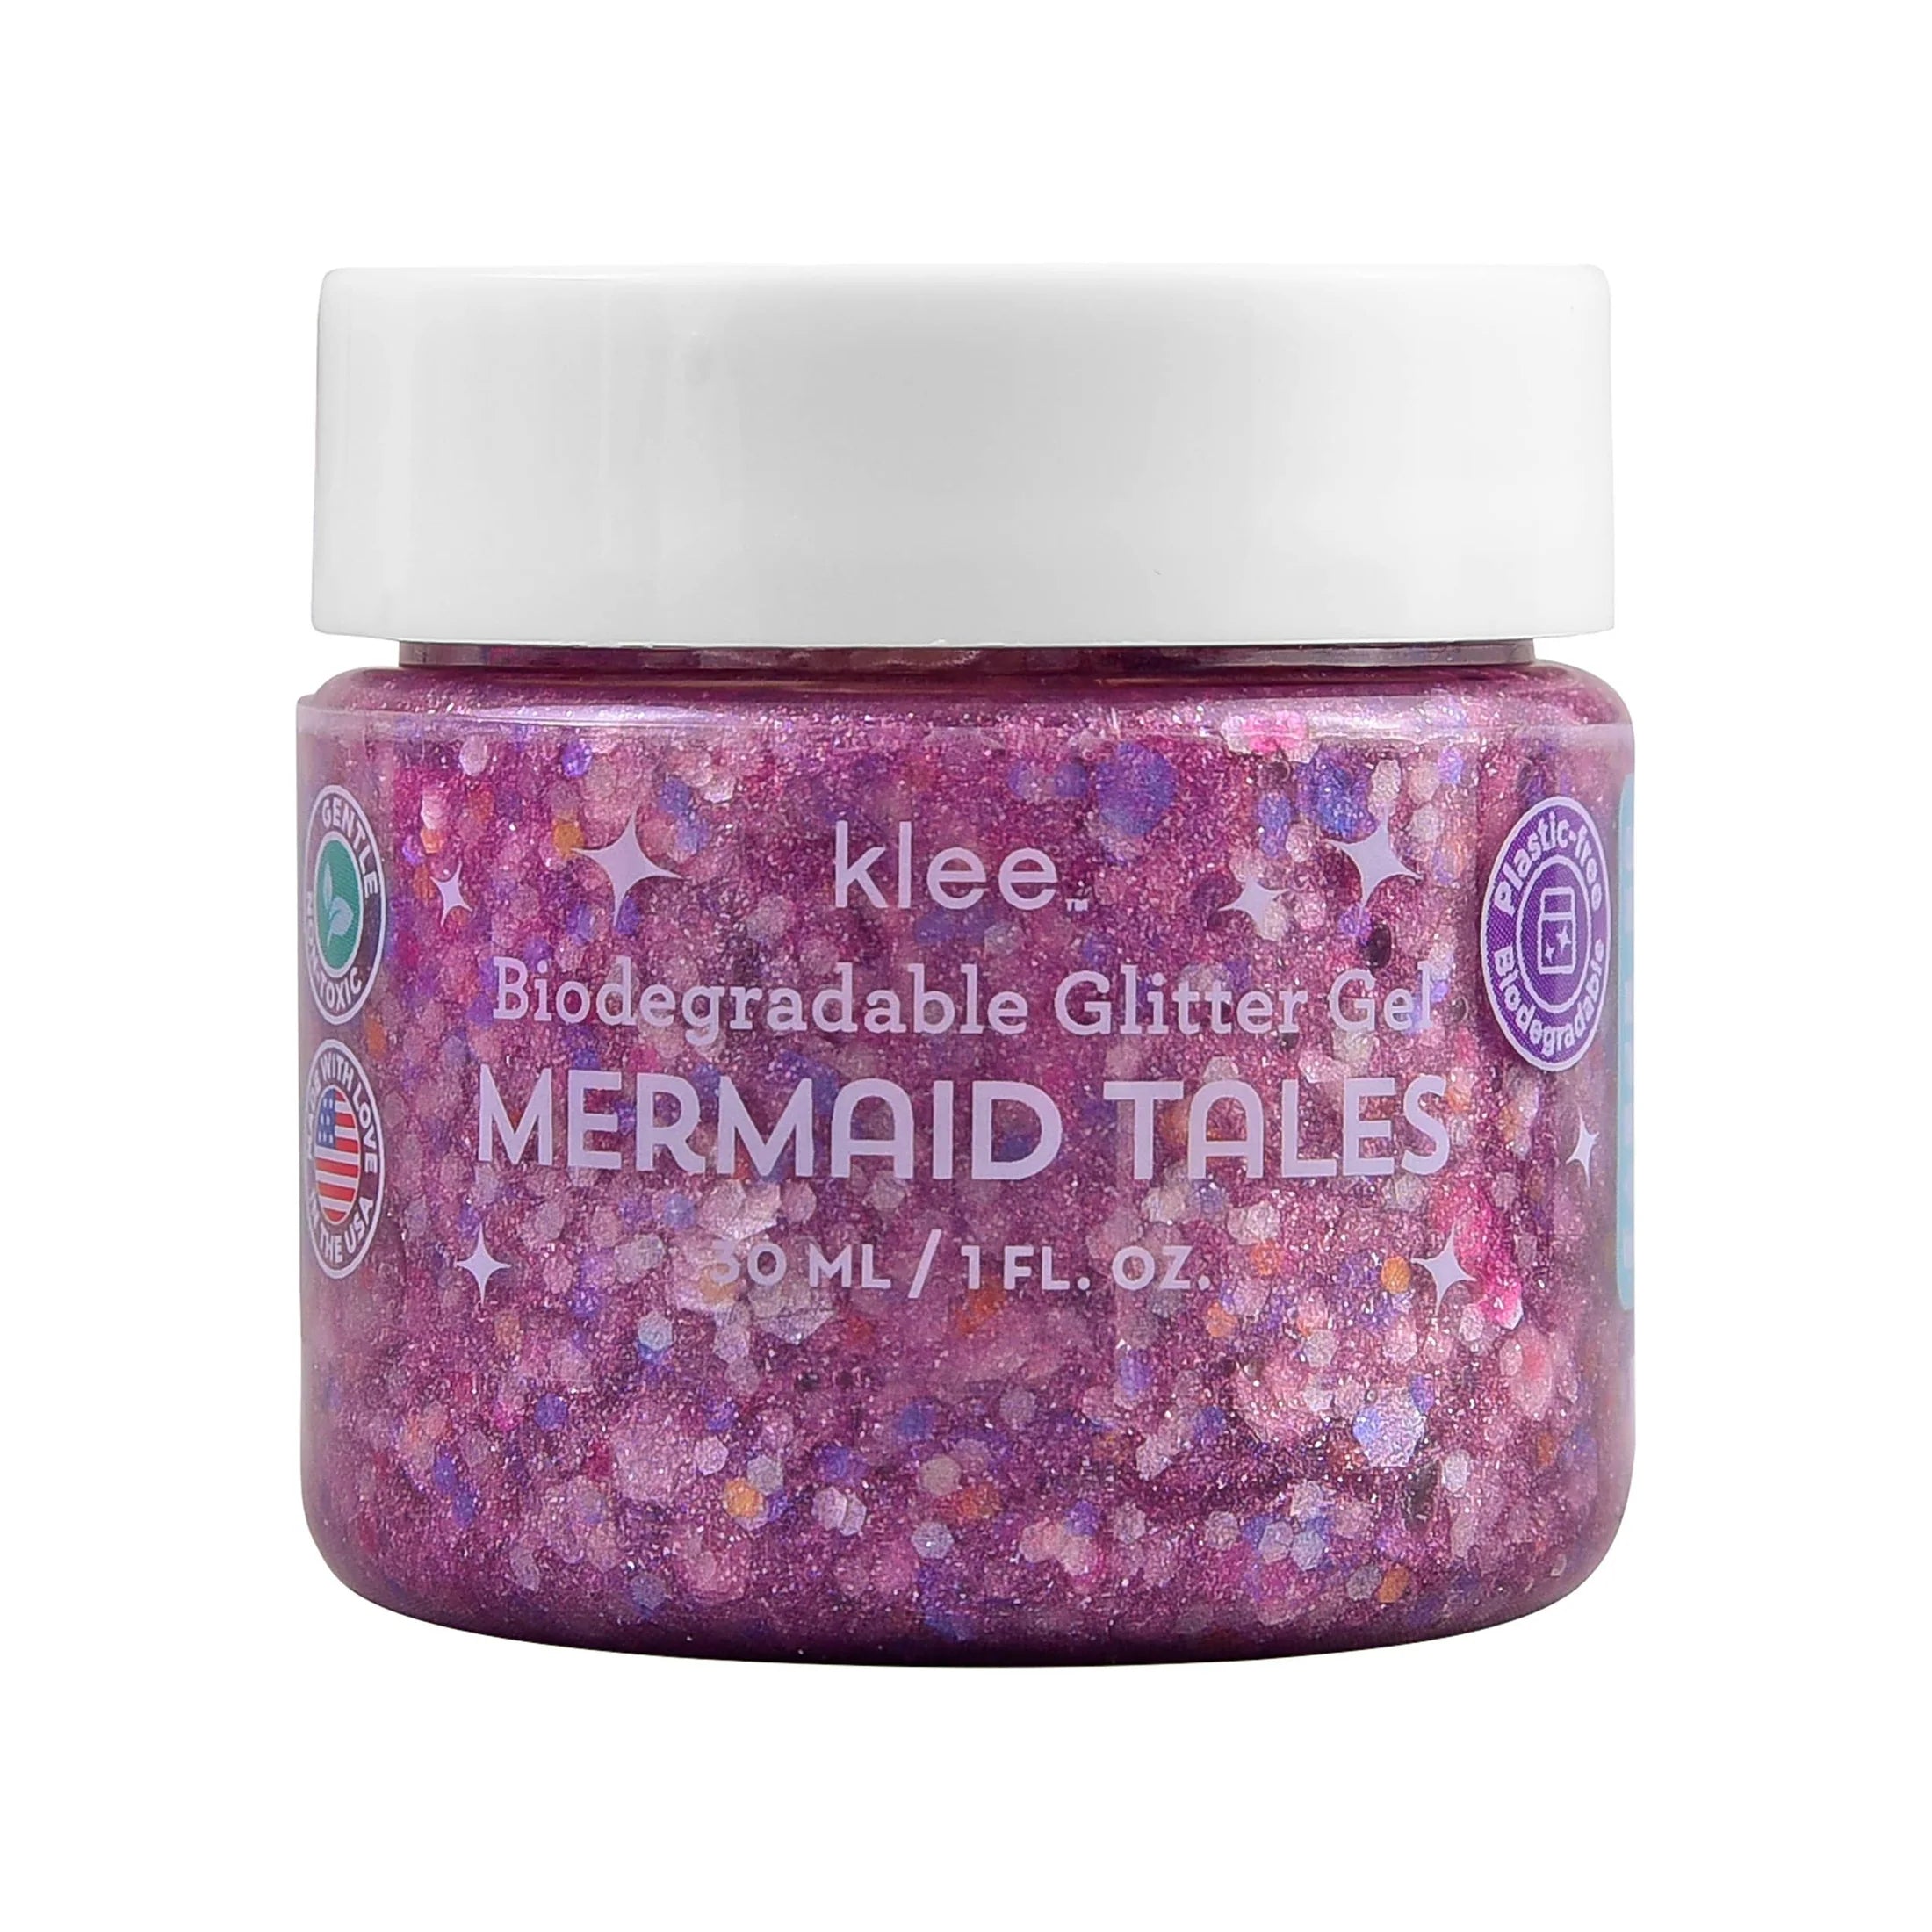 Mermaid Tails - Klee Biodegradable Glitter Gel, 1 oz - Twinkle Twinkle Little One